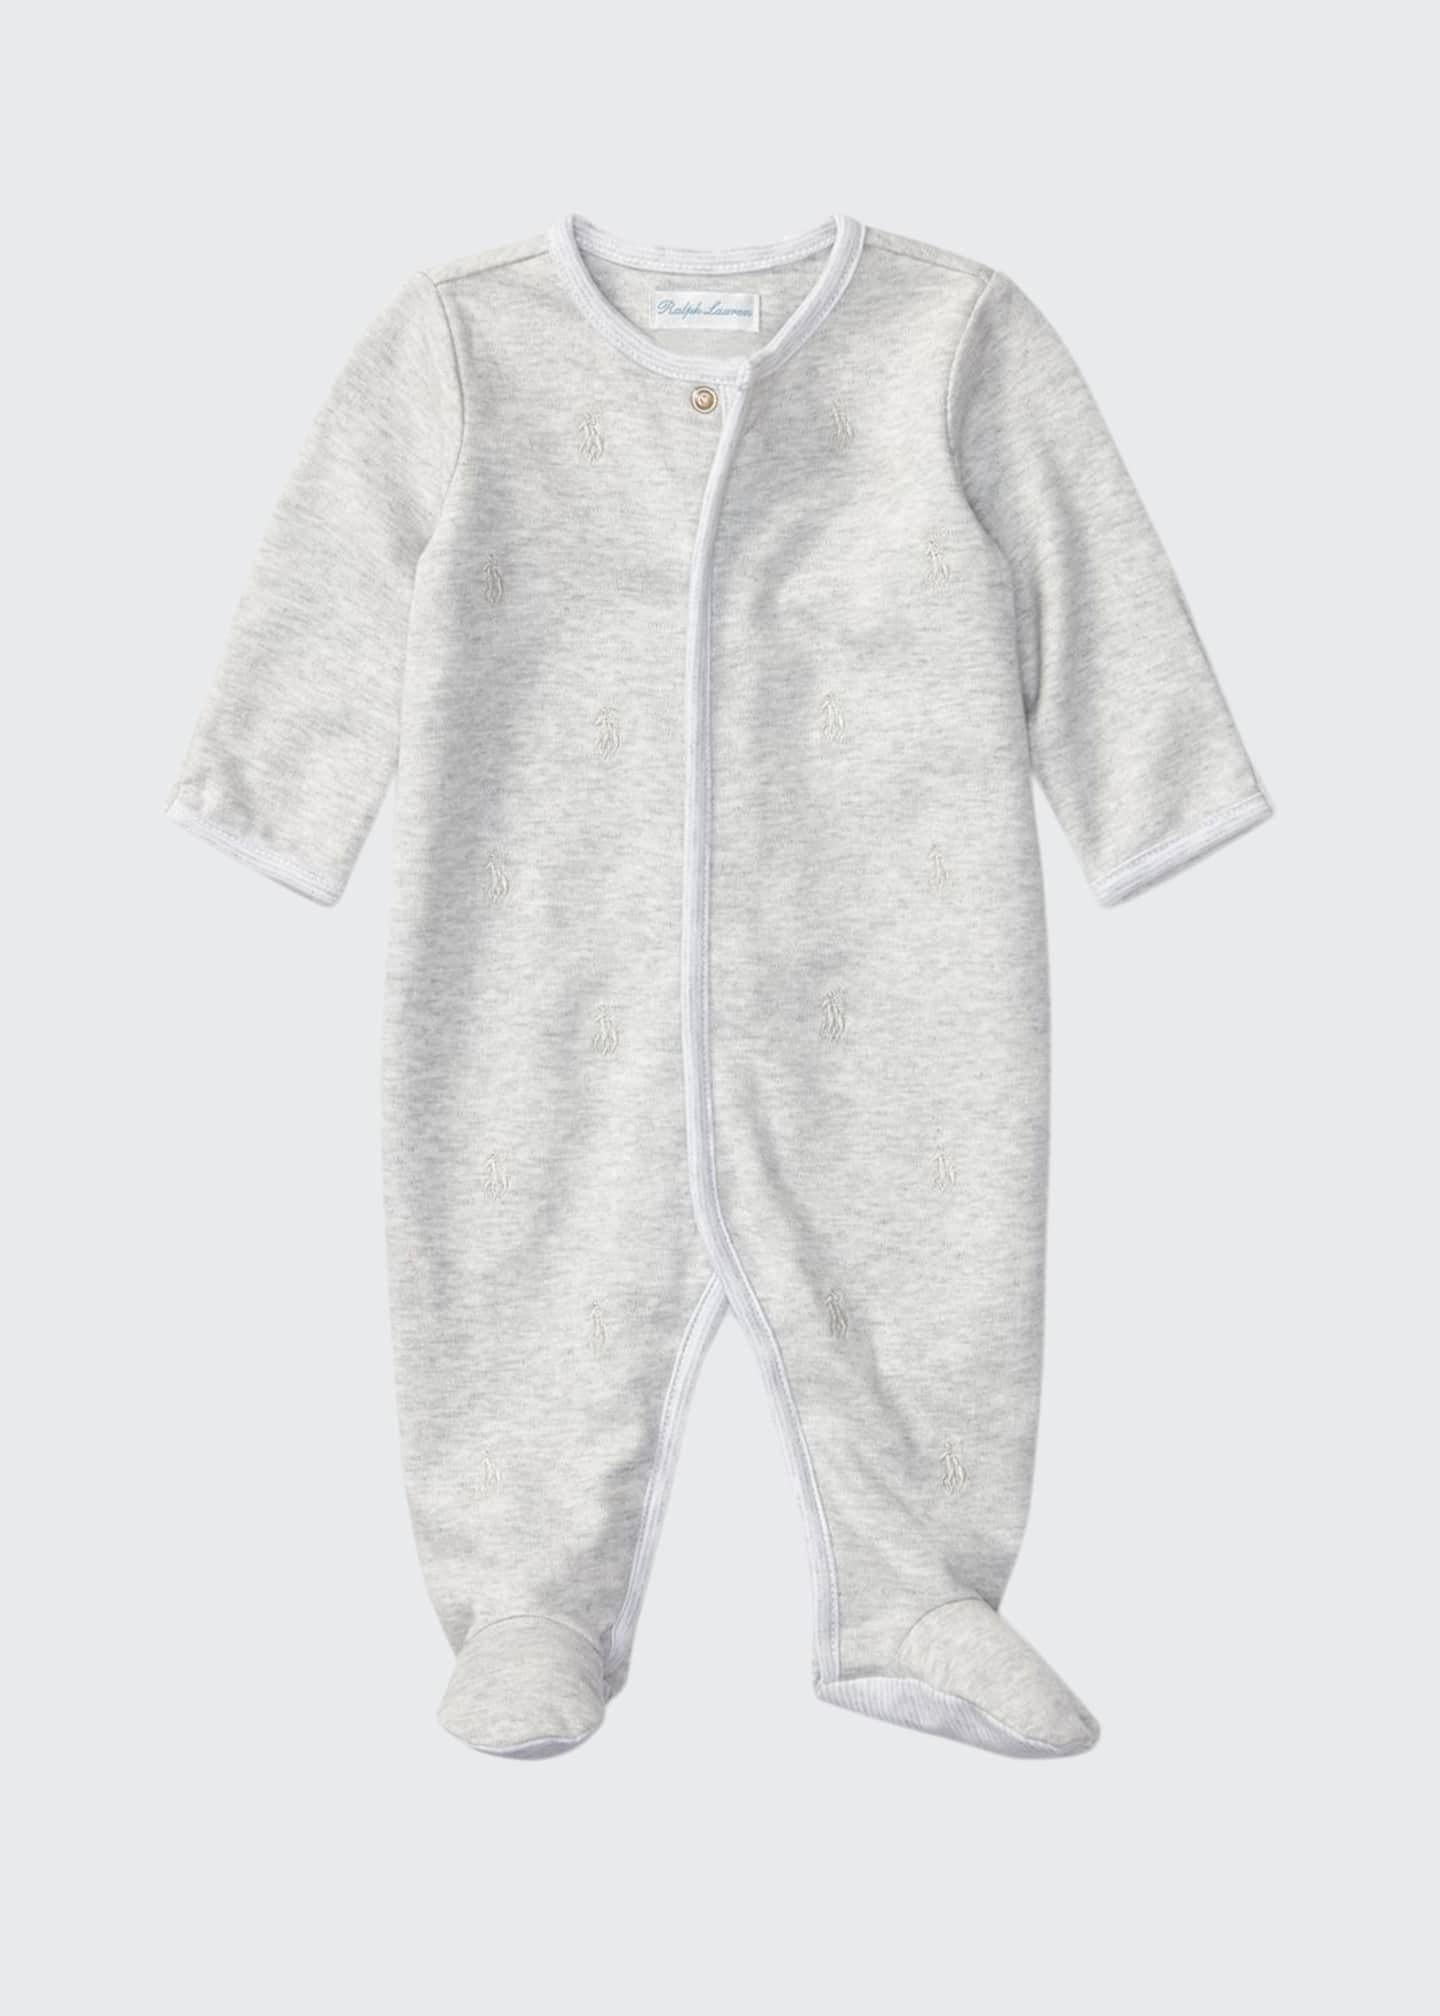 Ralph Lauren Childrenswear Logo Embroidery Heathered Interlock Footie  Pajamas, Size Newborn-9 Months - Bergdorf Goodman